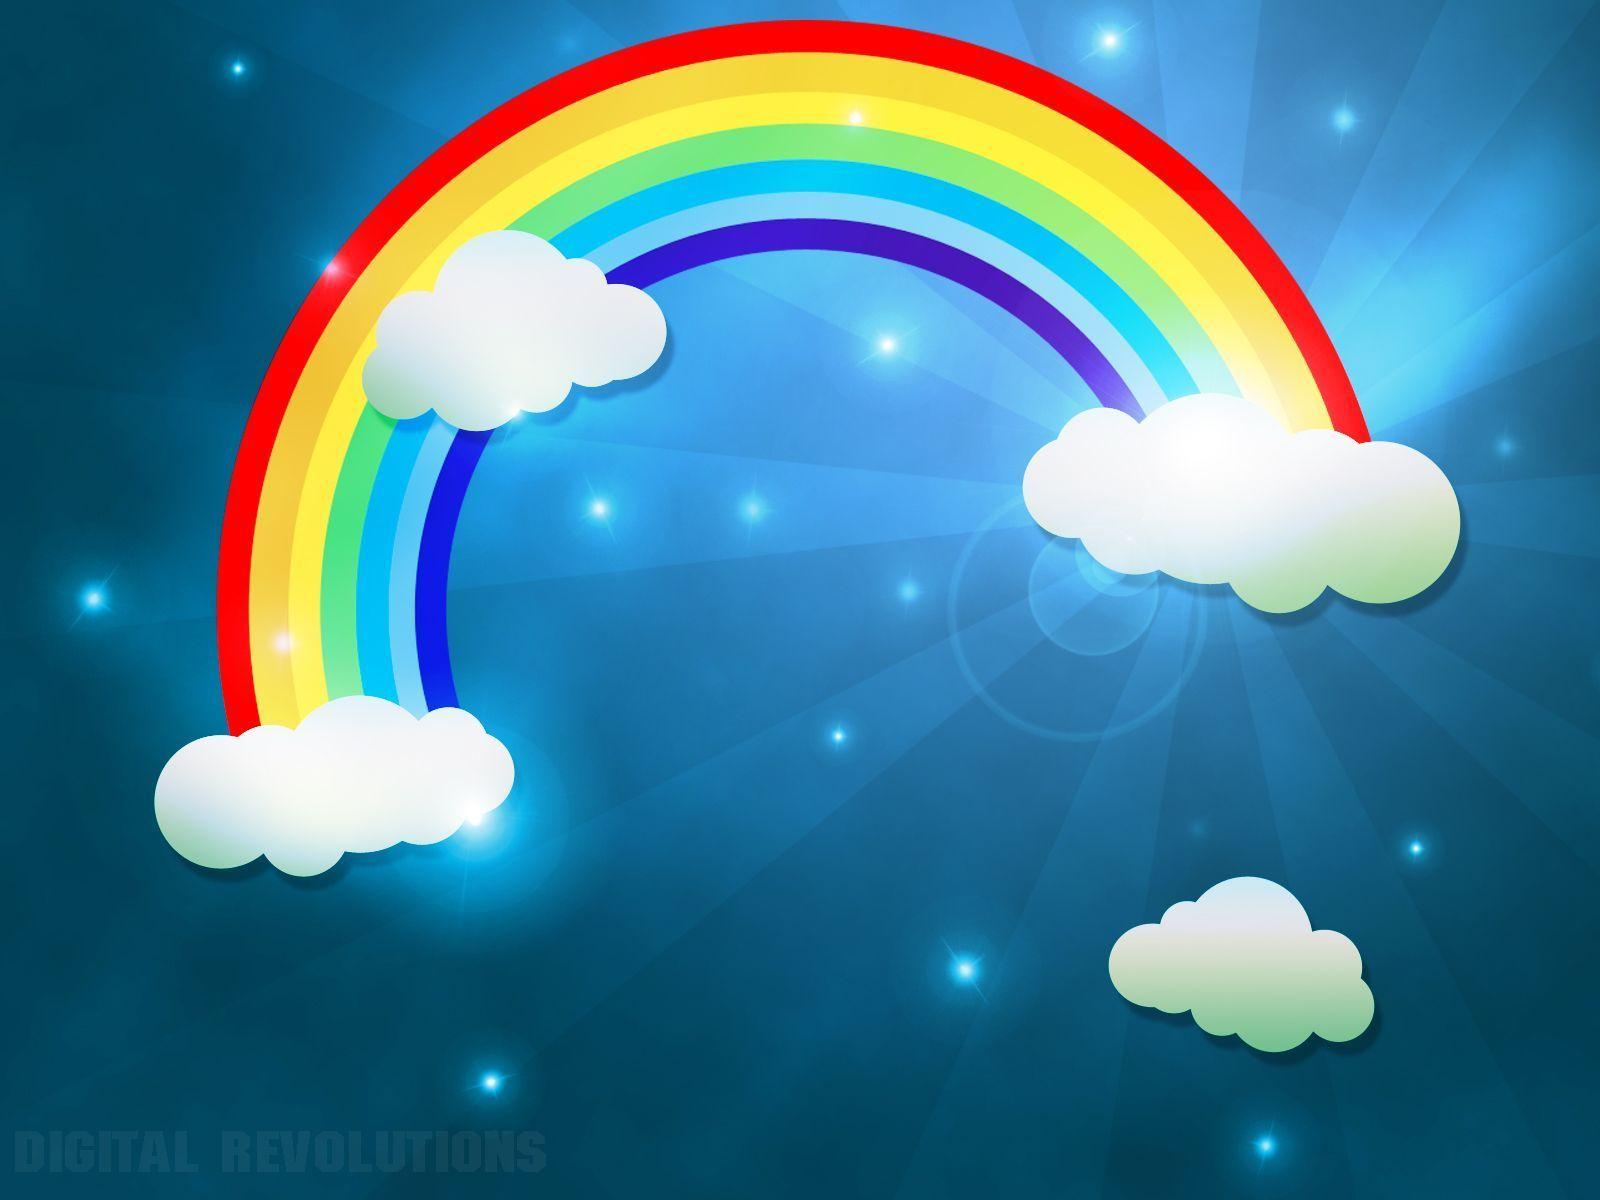 Download wallpaper: Rainbow, Sky, clouds, download photo, desktop